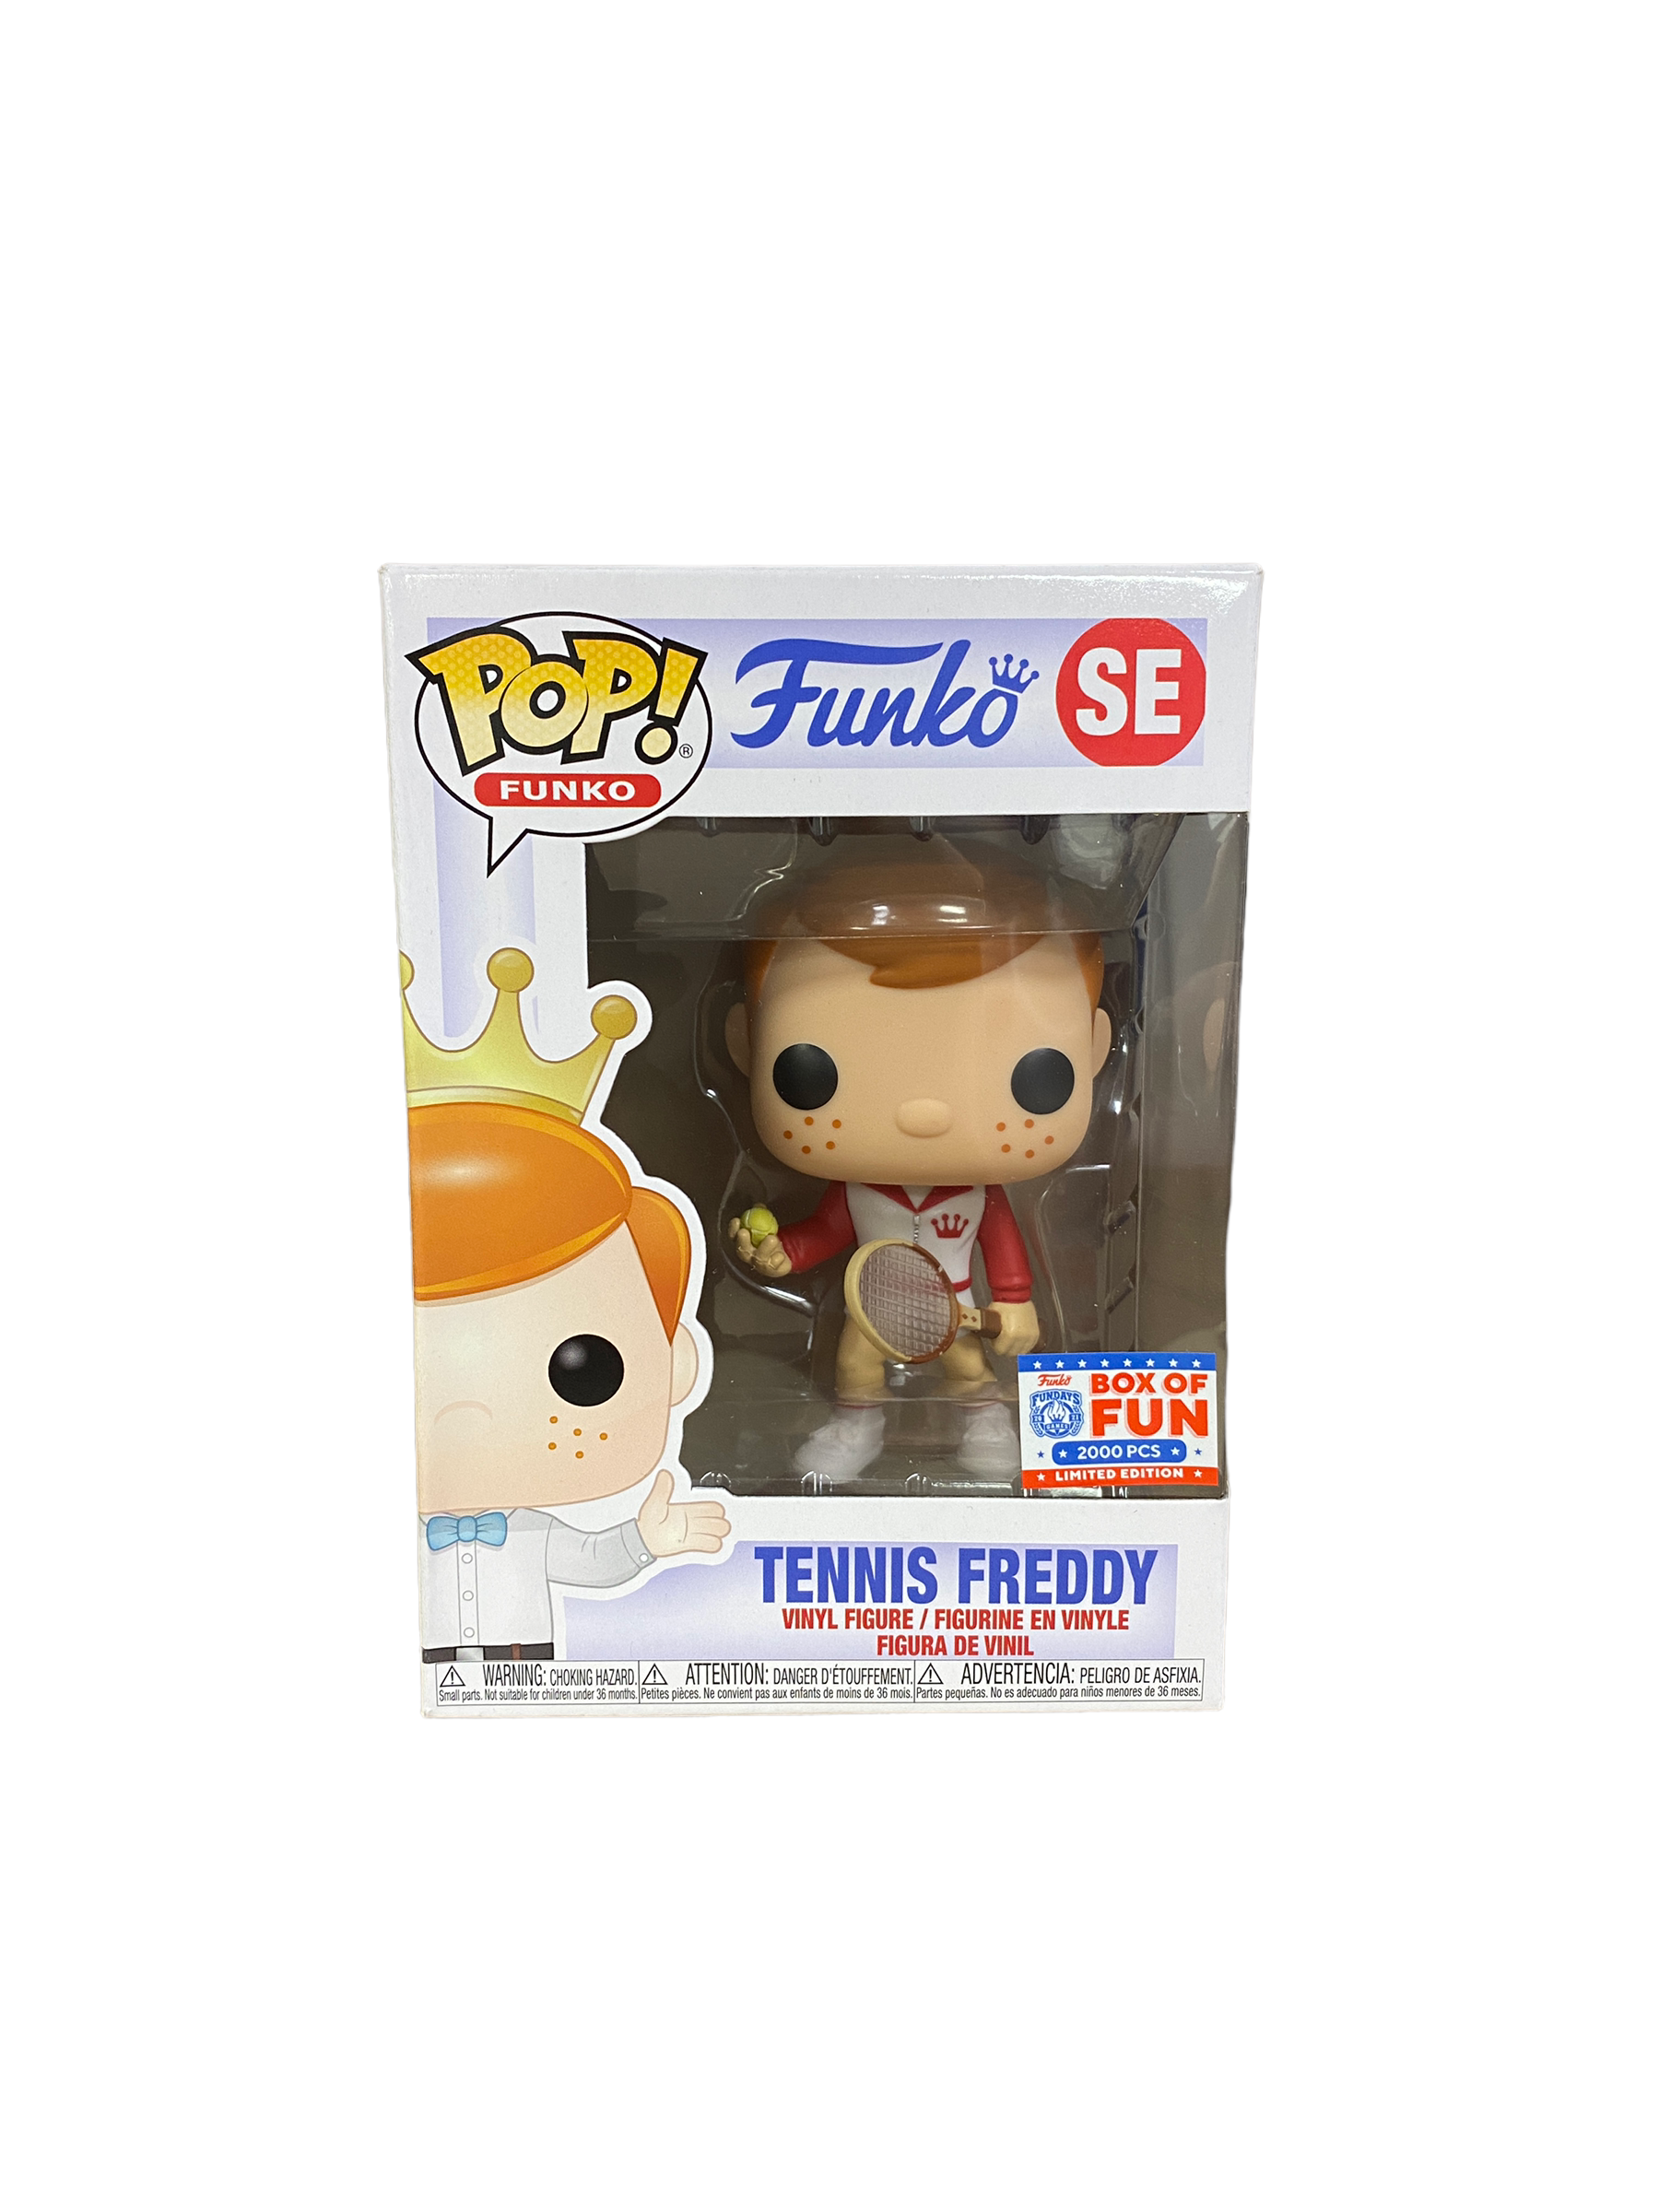 Tennis Freddy Funko Pop! - Virtual Funkon 2021 Exclusive LE2000 Pcs - Condition 7/10